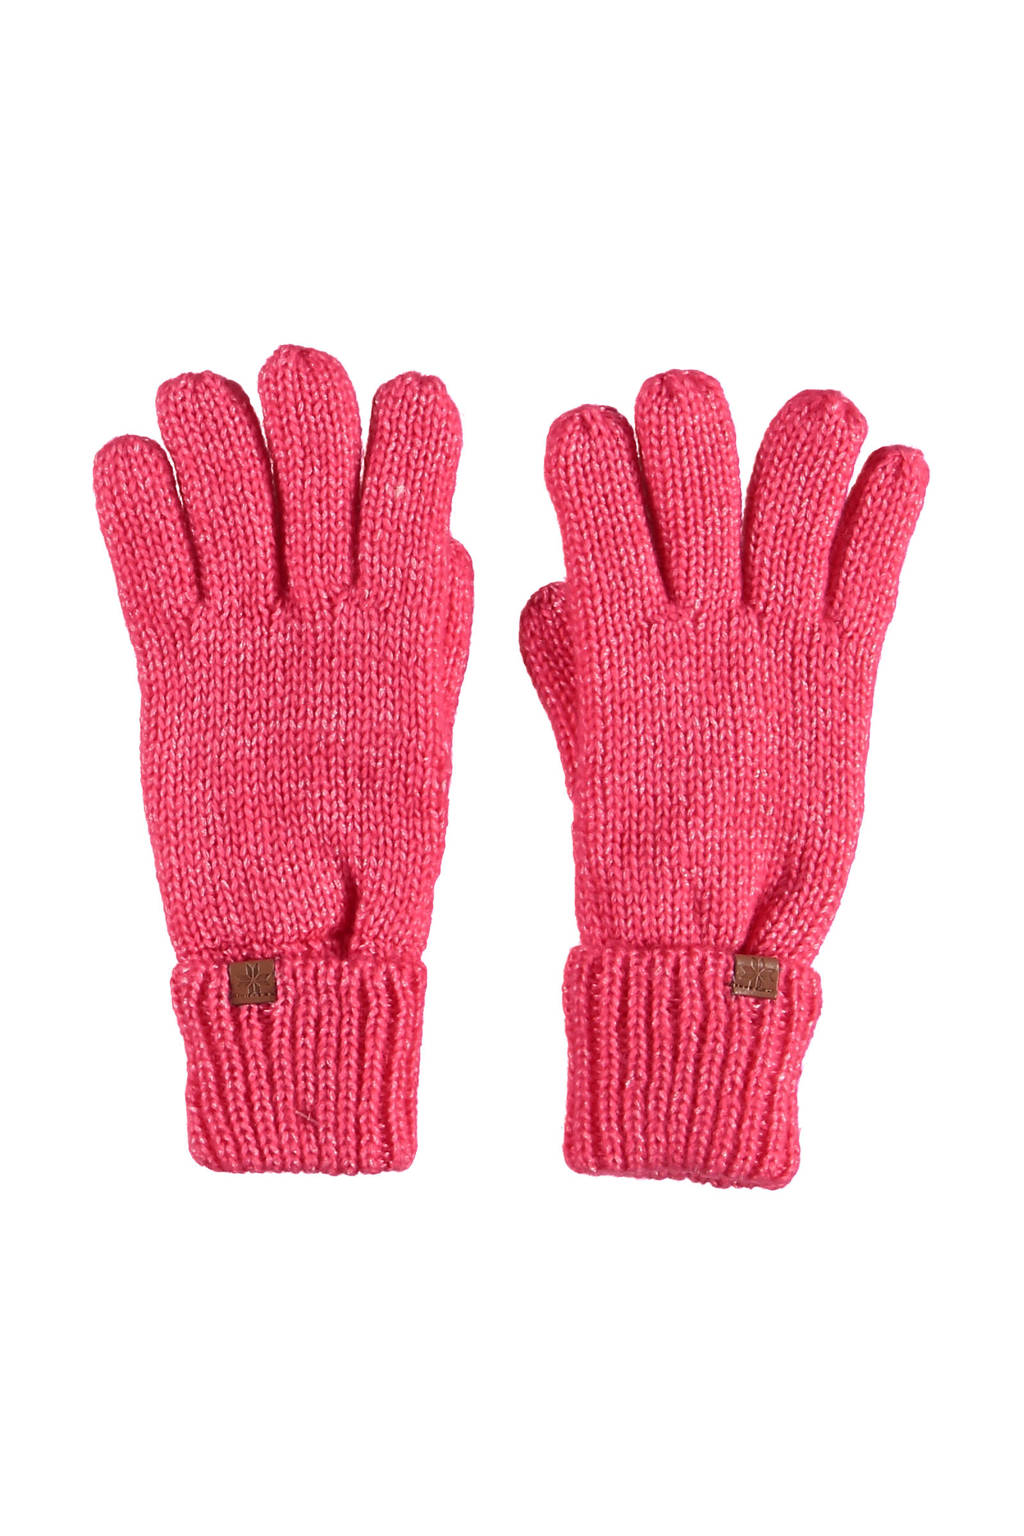 Sarlini handschoenen gemeleerd roze, Roze